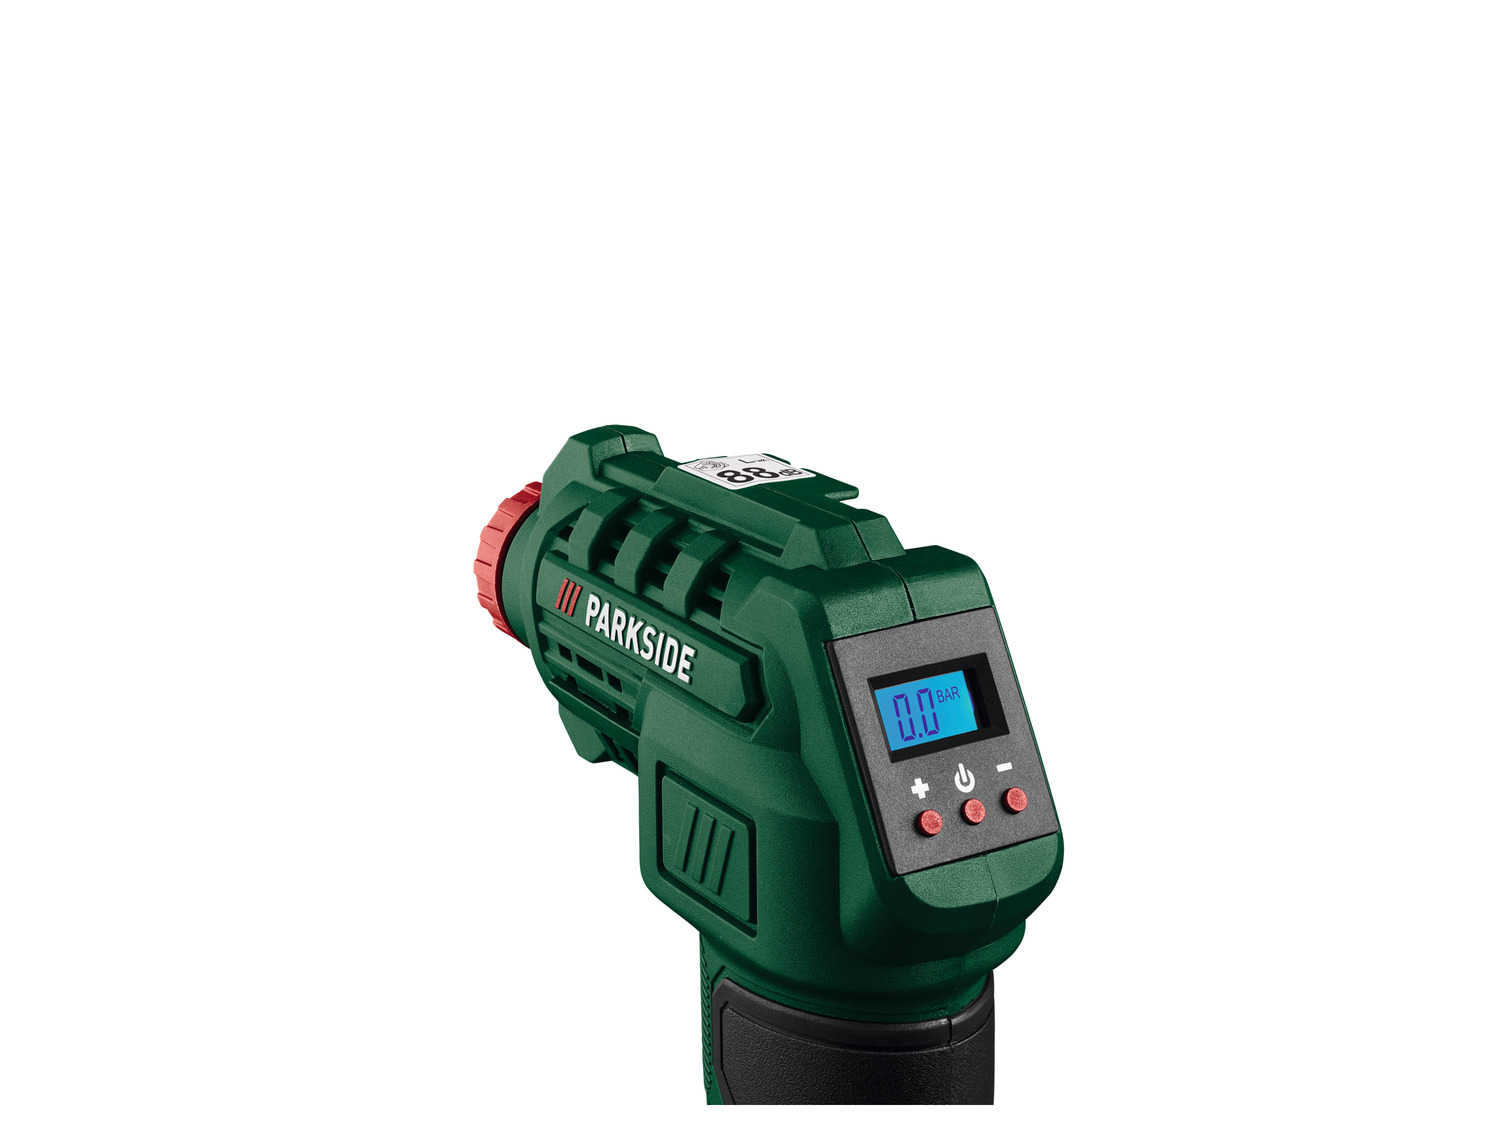 PARKSIDE® Compresseur/pompe à air sans fil PAK 20-Li B…